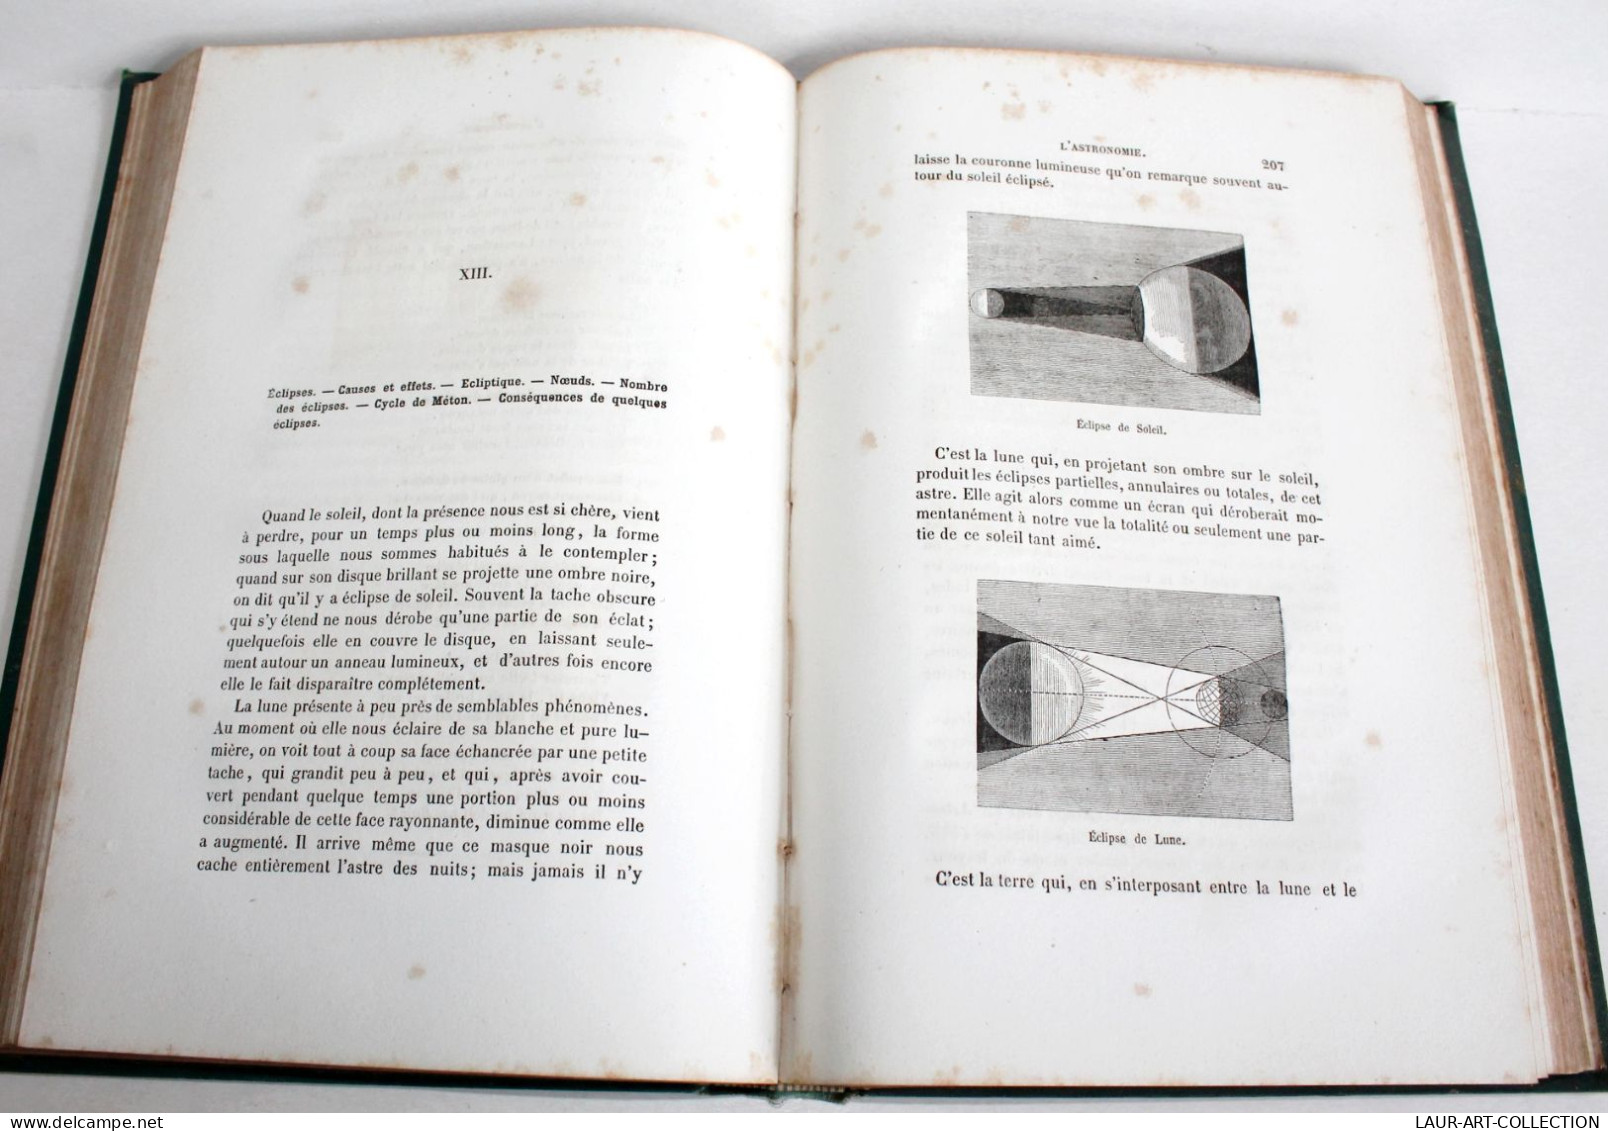 L'ASTRONOMIE OUVRAGE DEDIE A JEUNESSE CHRETIENNE De DARCEY + GRAVURE 1878 MEGARD / ANCIEN LIVRE XIXe SIECLE (2603.135) - Astronomia